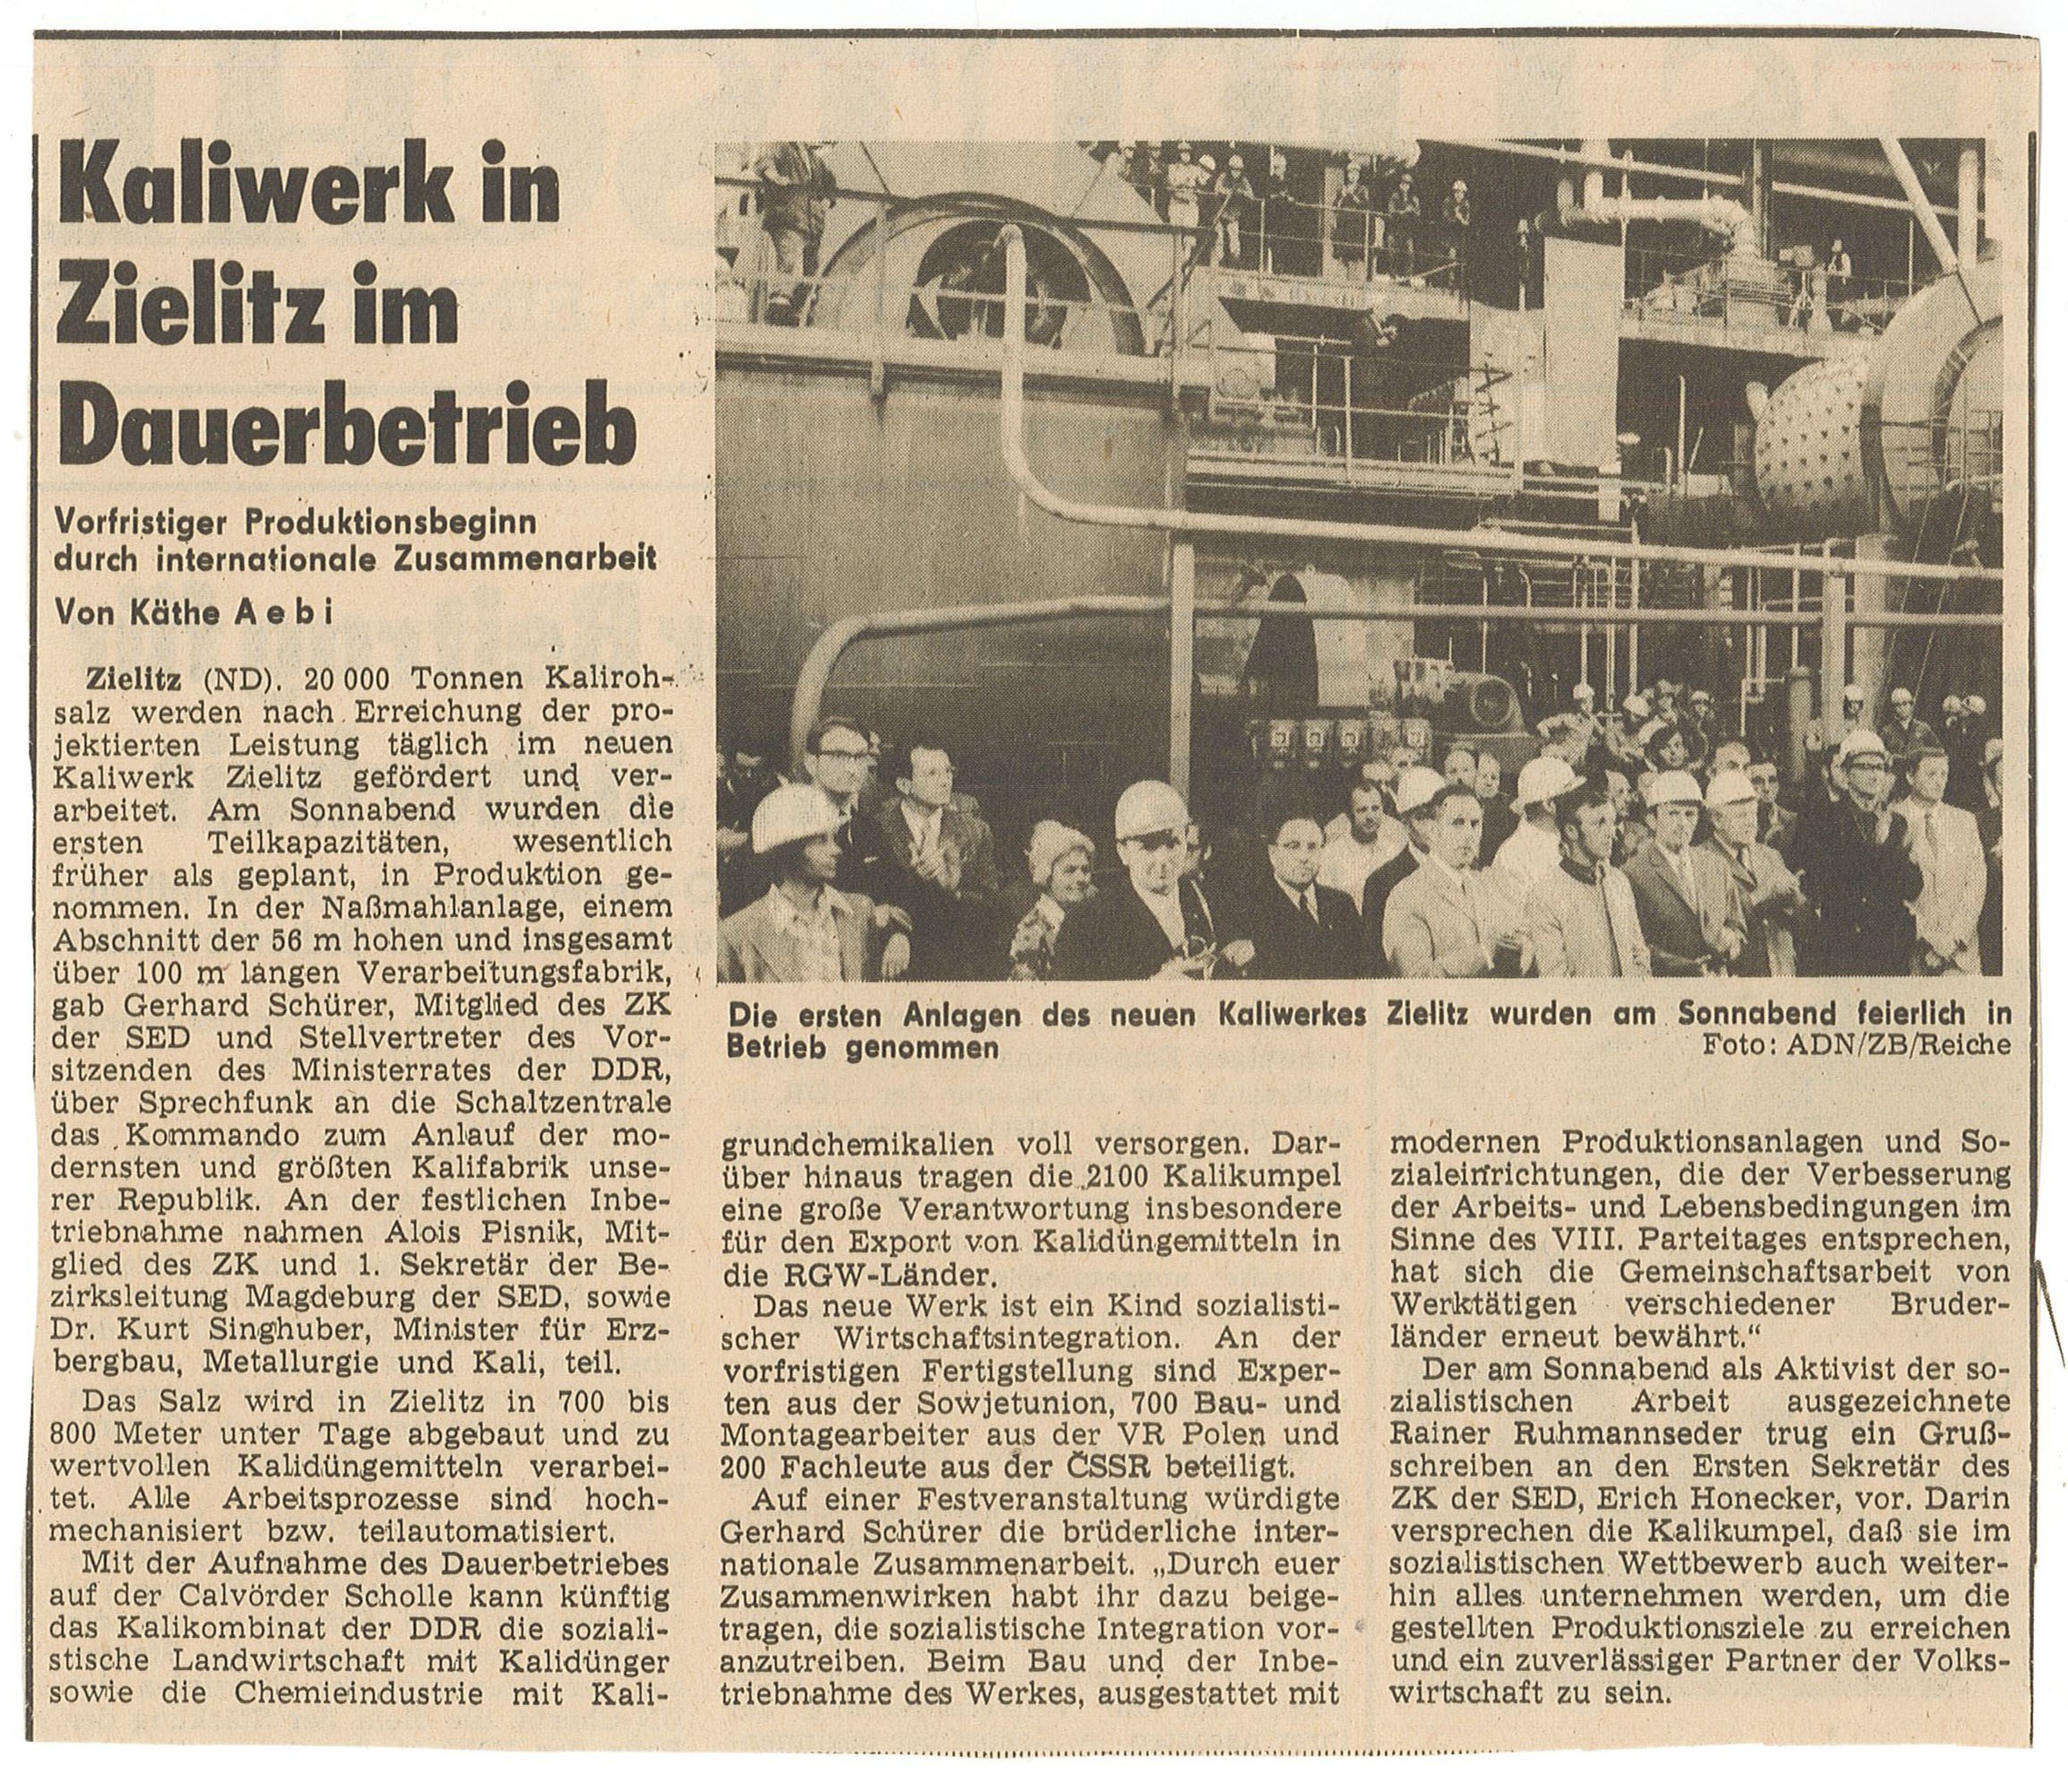 Bild / Zeitungsartikel "Kaliwerk in Zielitz im Dauerbetrieb" (Museum Wolmirstedt RR-F)